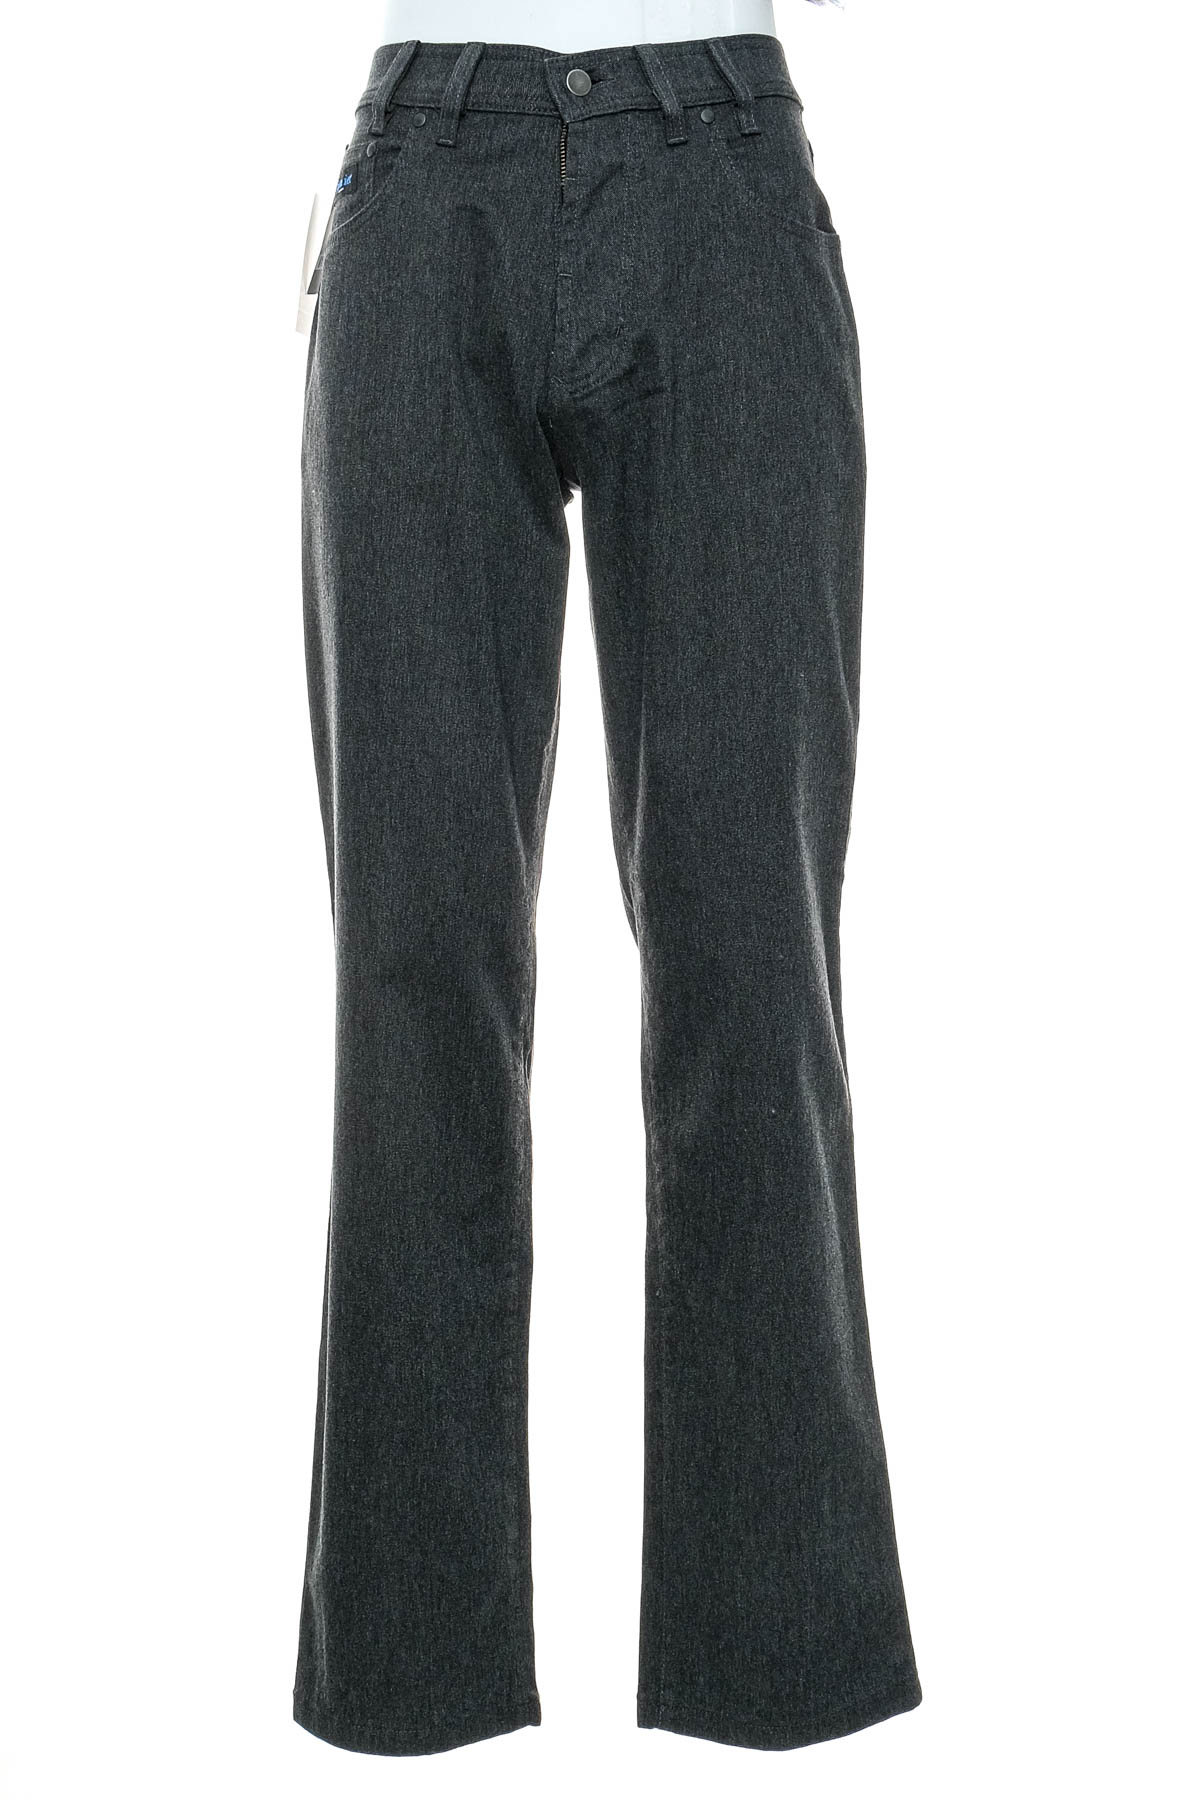 Men's trousers - PIONIER - 0